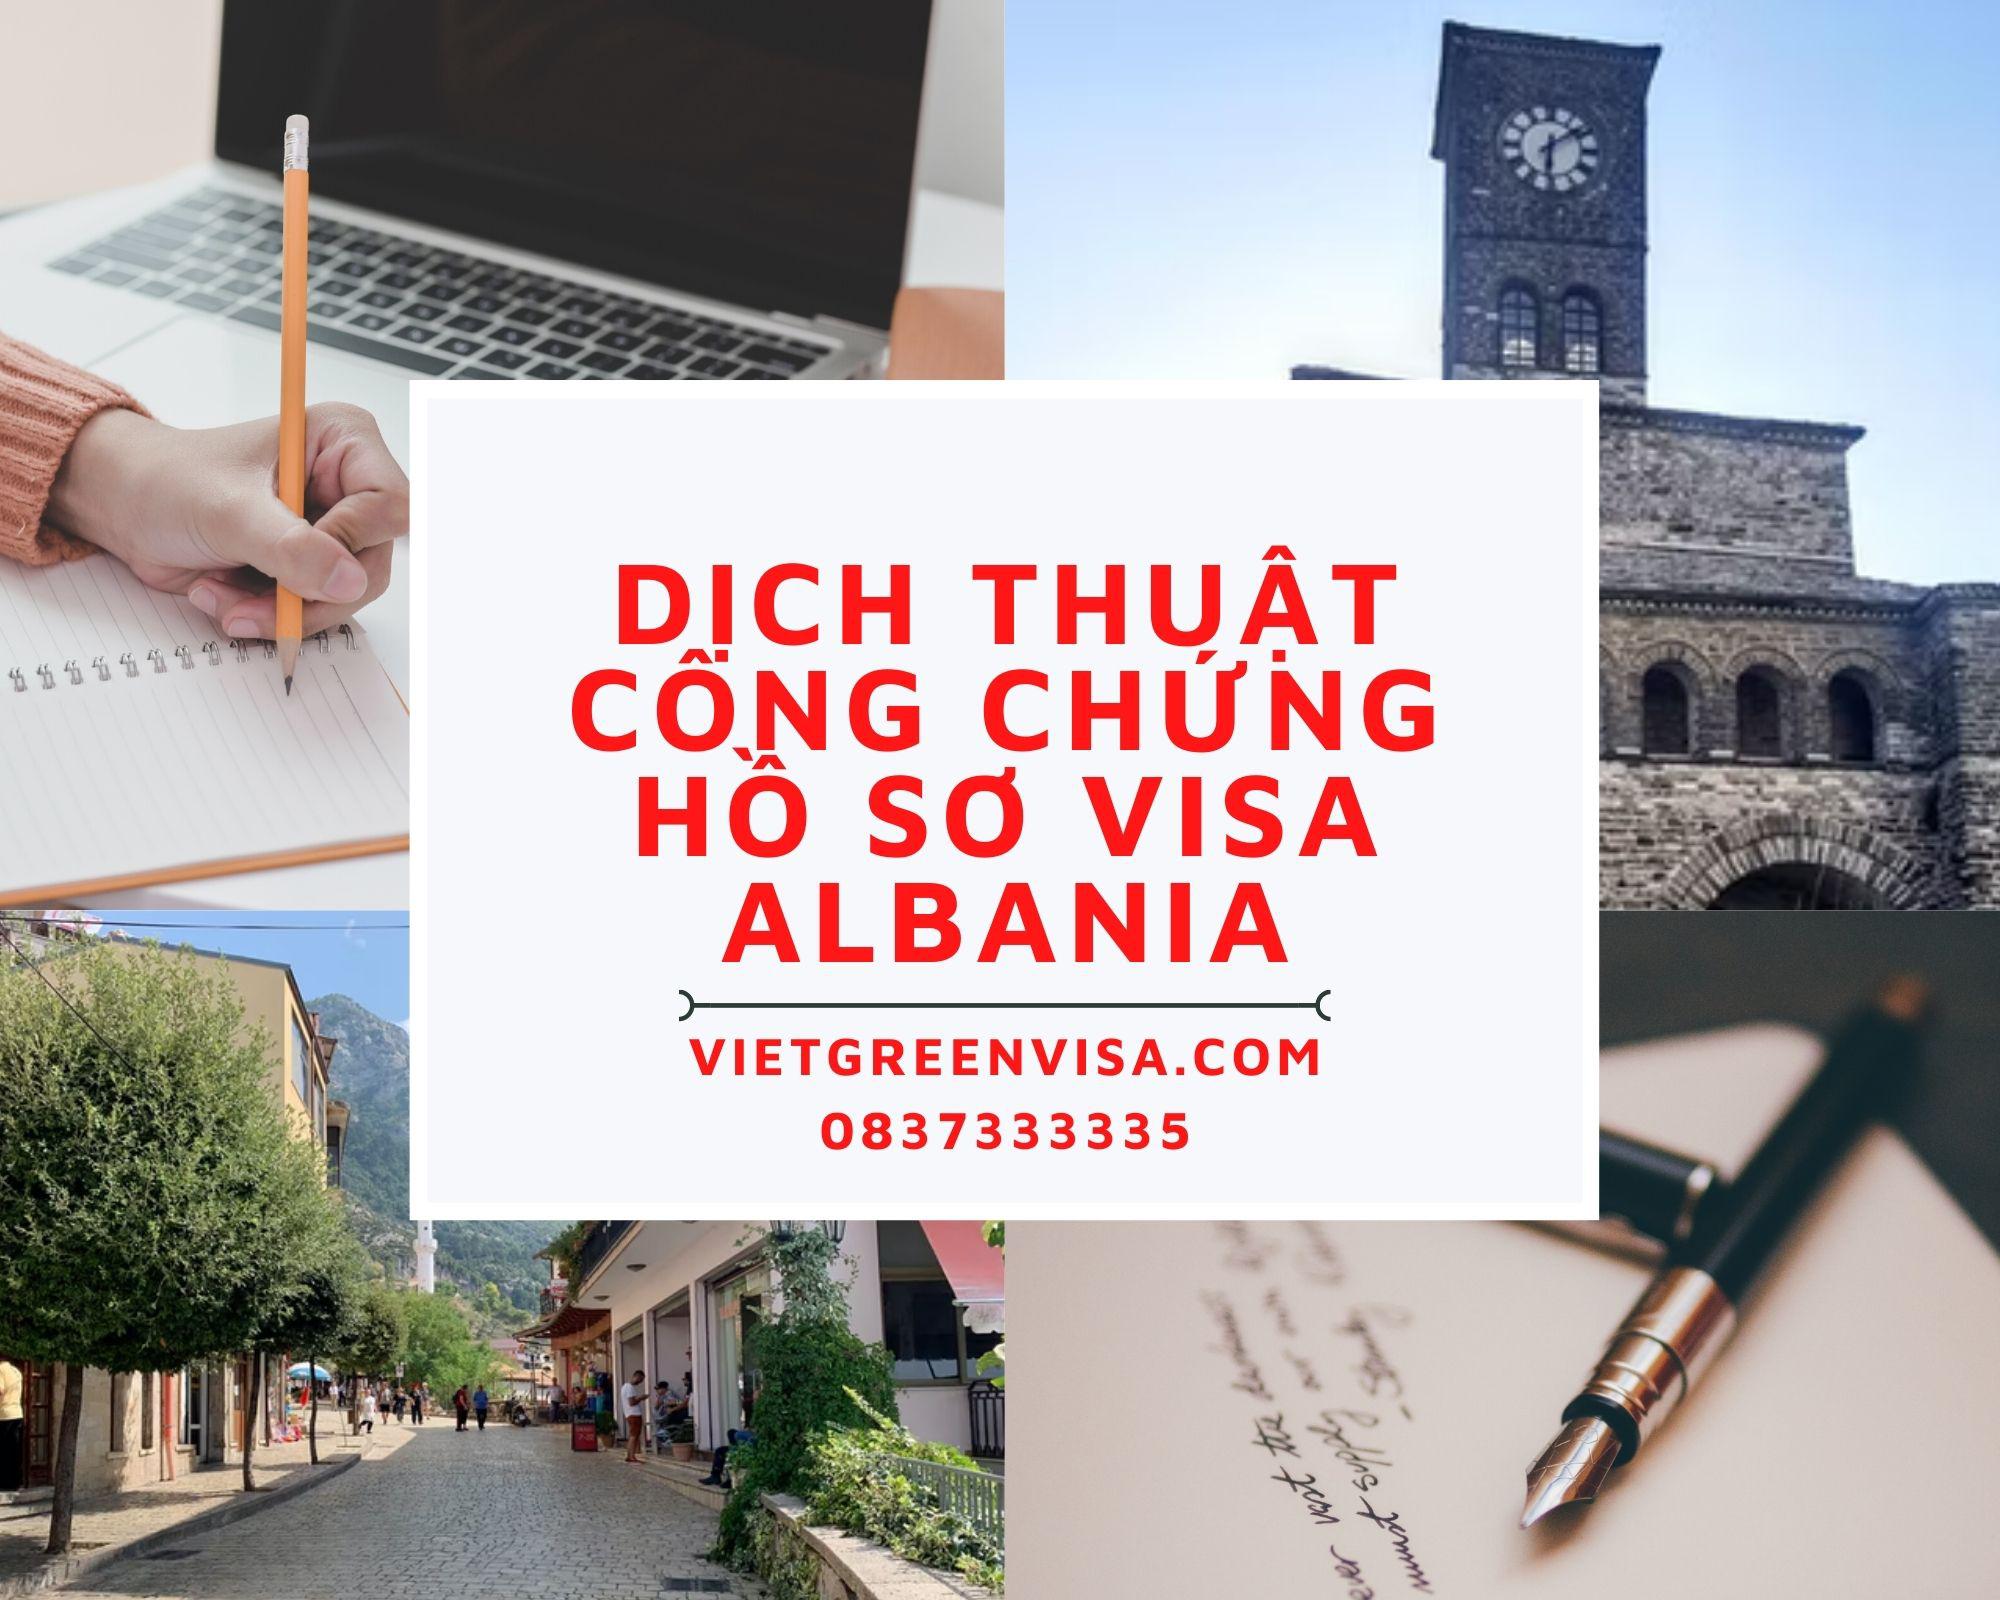 Dịch thuật công chứng hồ sơ visa du lịch Albania nhanh rẻ